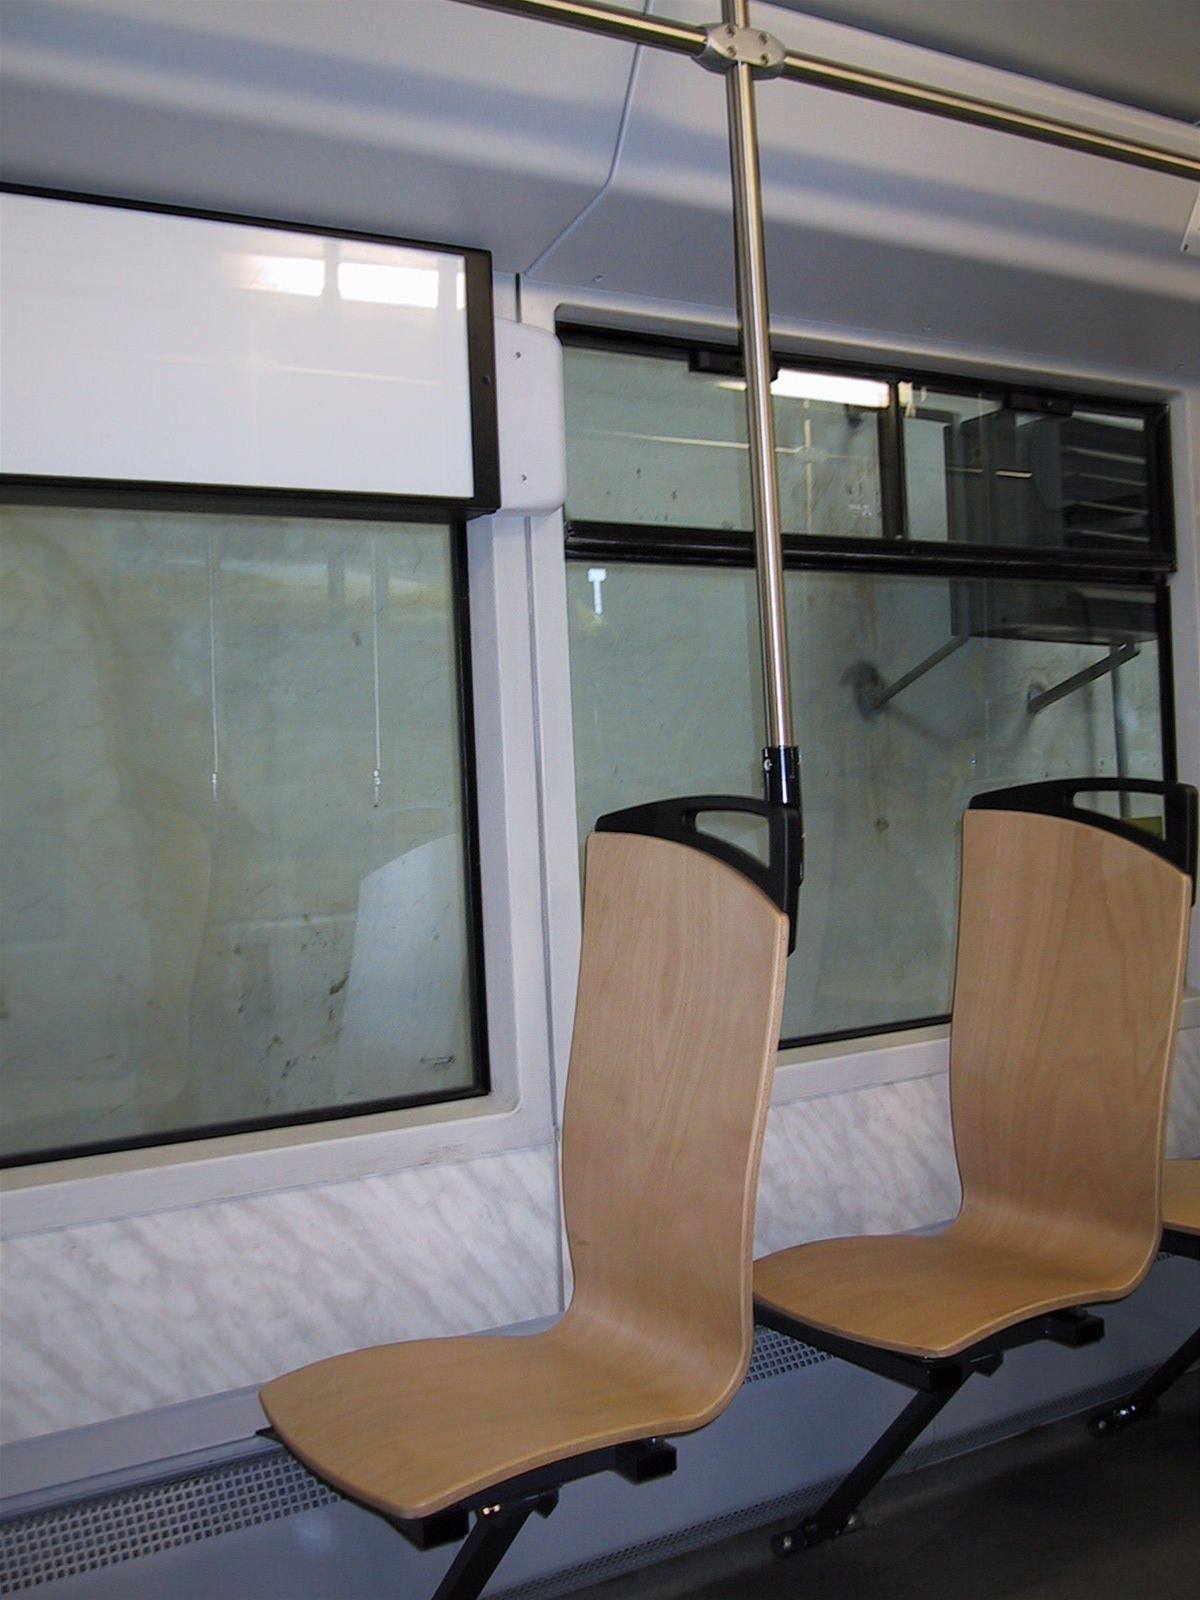 Nové devné sedaky v plzeské tramvaji